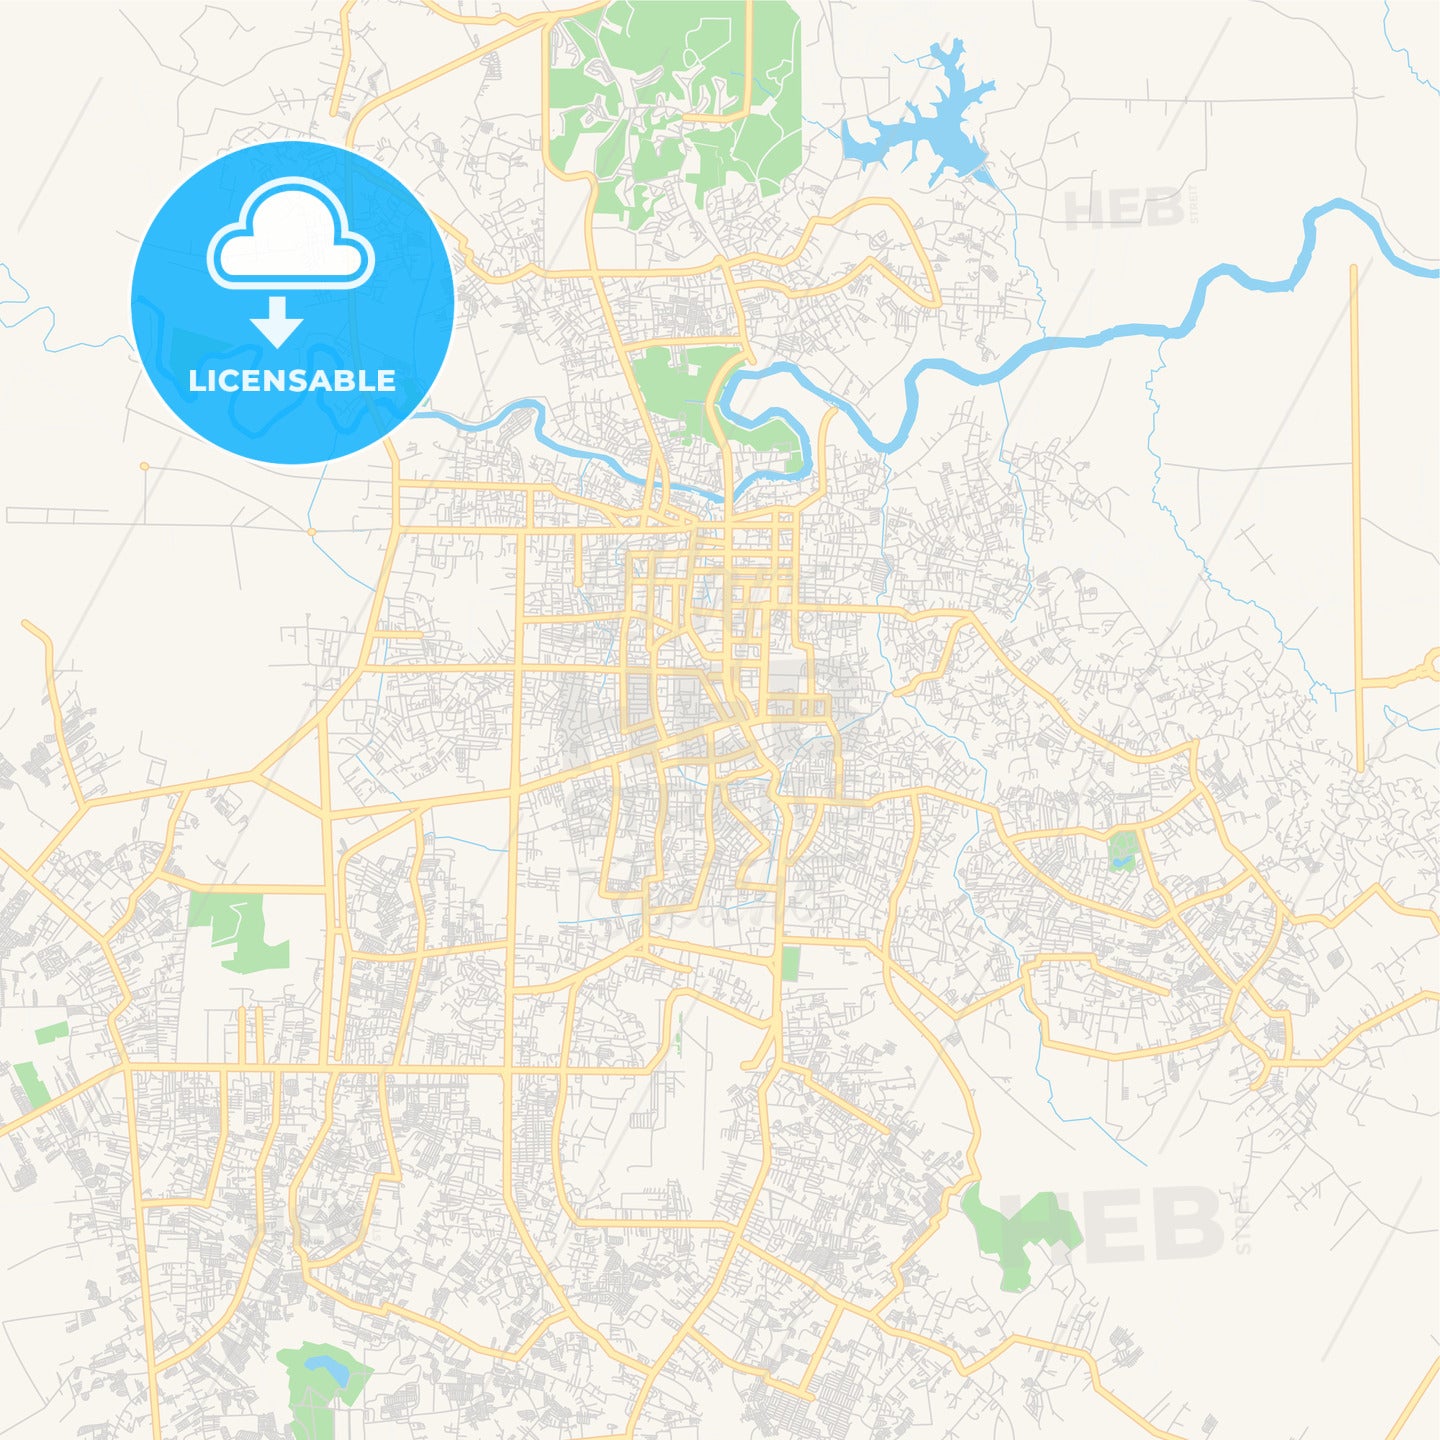 Printable street map of Pekanbaru, Indonesia